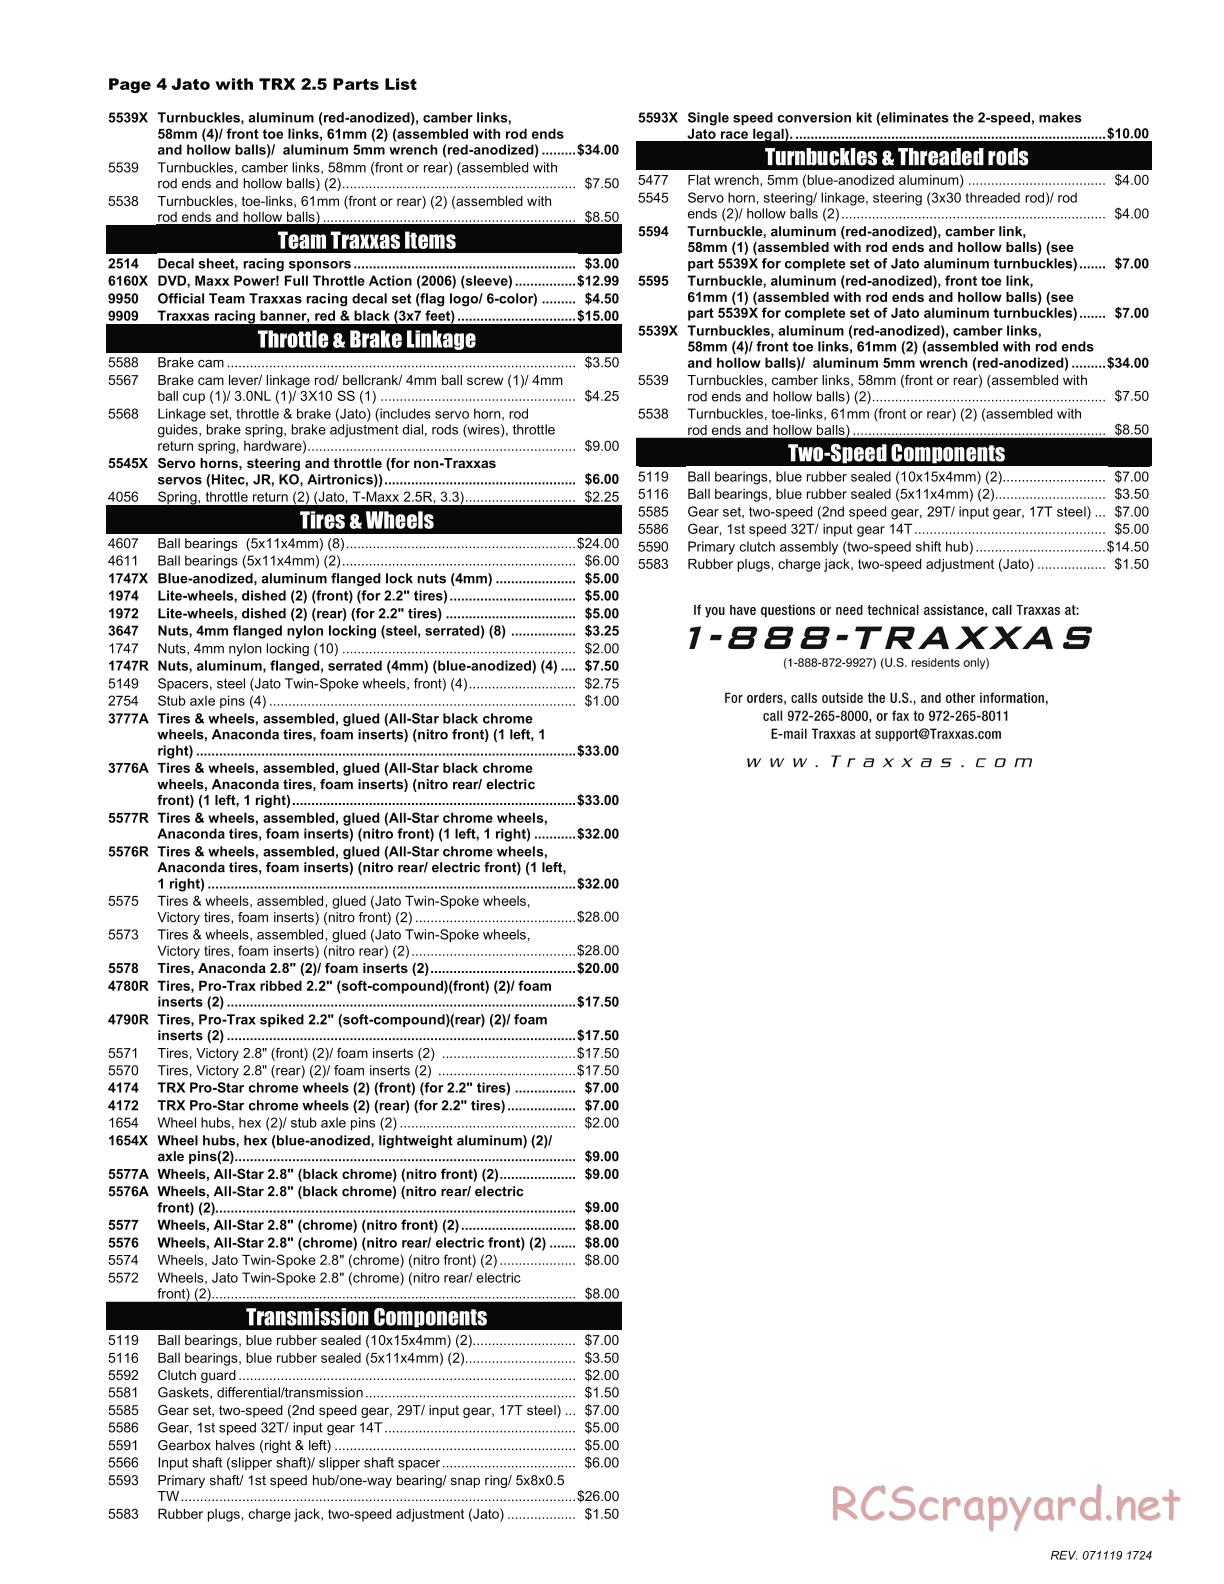 Traxxas - Jato 2.5 (2005) - Parts List - Page 4